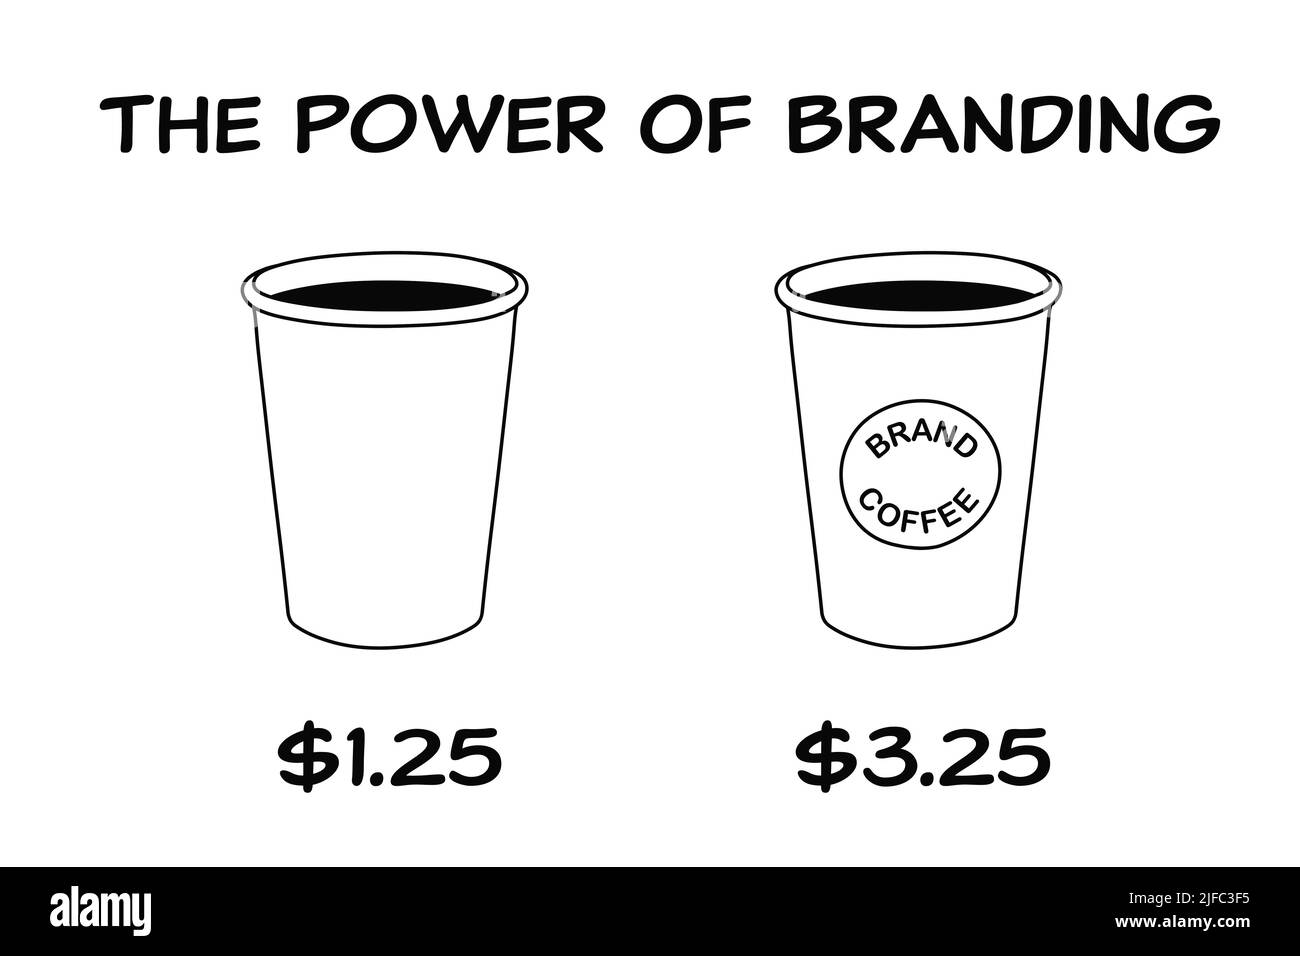 Concetto aziendale sulla potenza del branding con due tazze di caffè, una con marchio e una senza marchio, con grande differenza di prezzo. Foto Stock